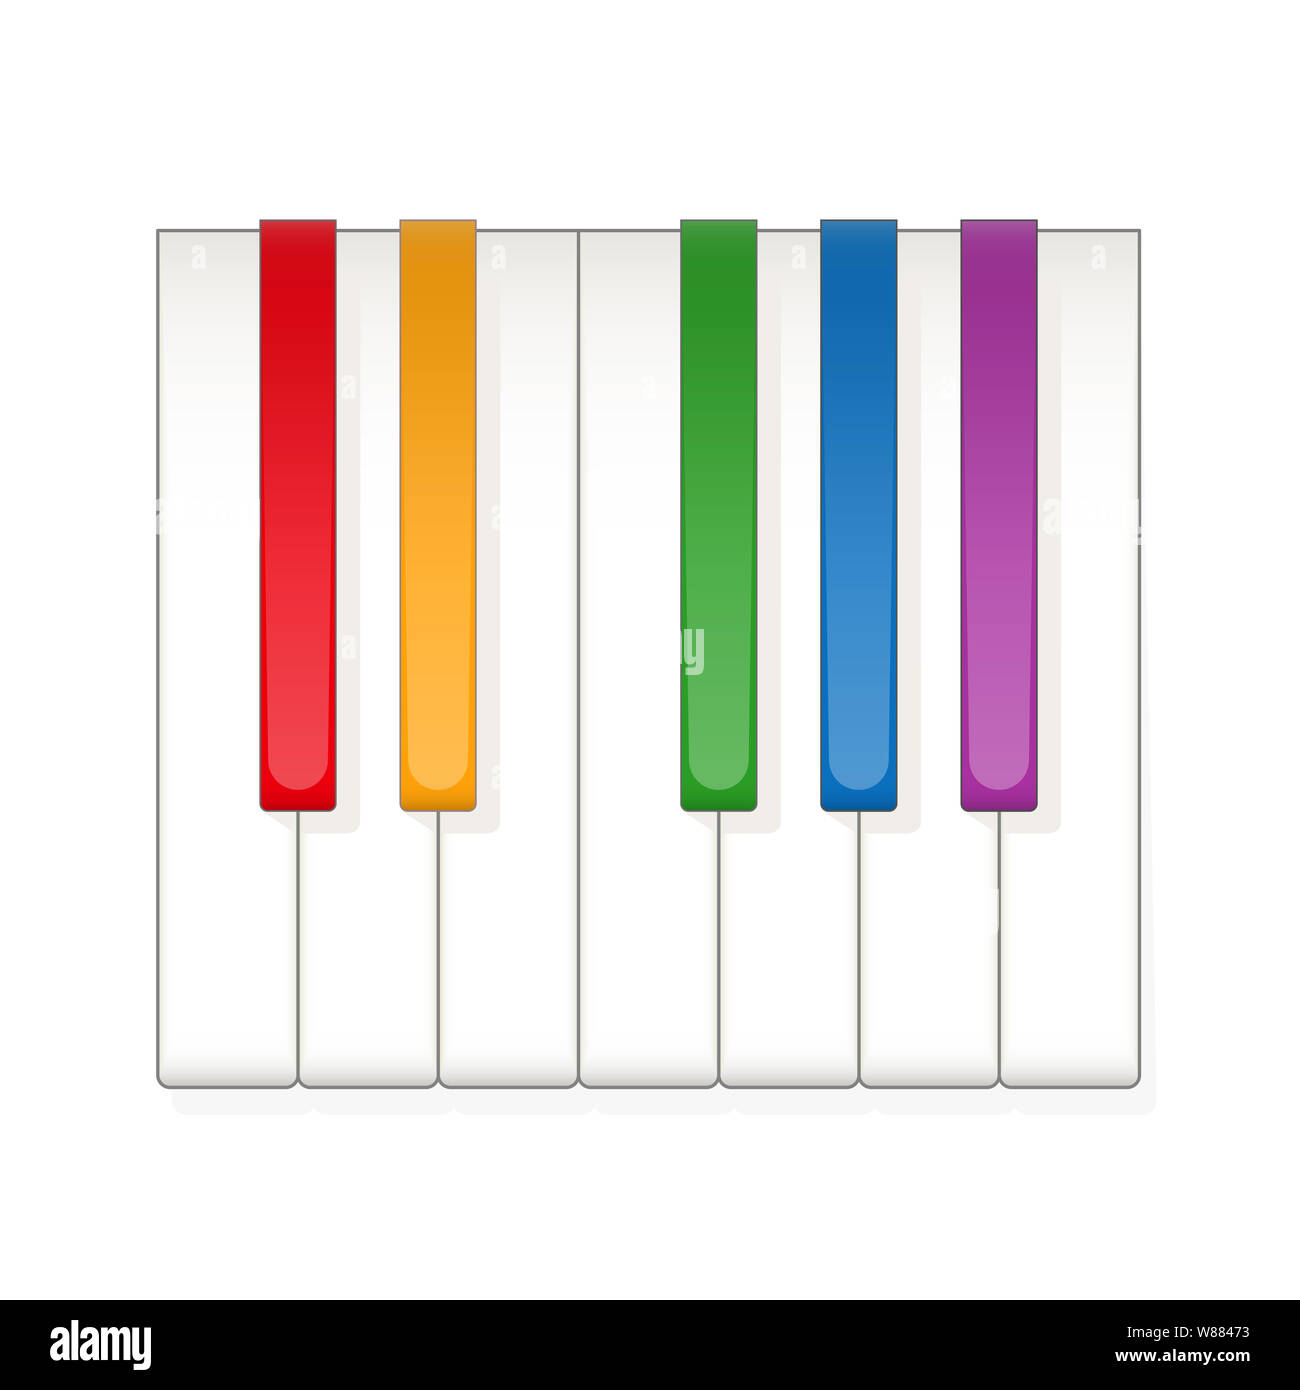 Eine Oktave auf der Tastatur mit farbigen statt der schwarzen Tasten zu spielen, einfach und lustig zu erfahren. Zwölf Tasten eines Instruments. Abbildung auf Weiß. Stockfoto